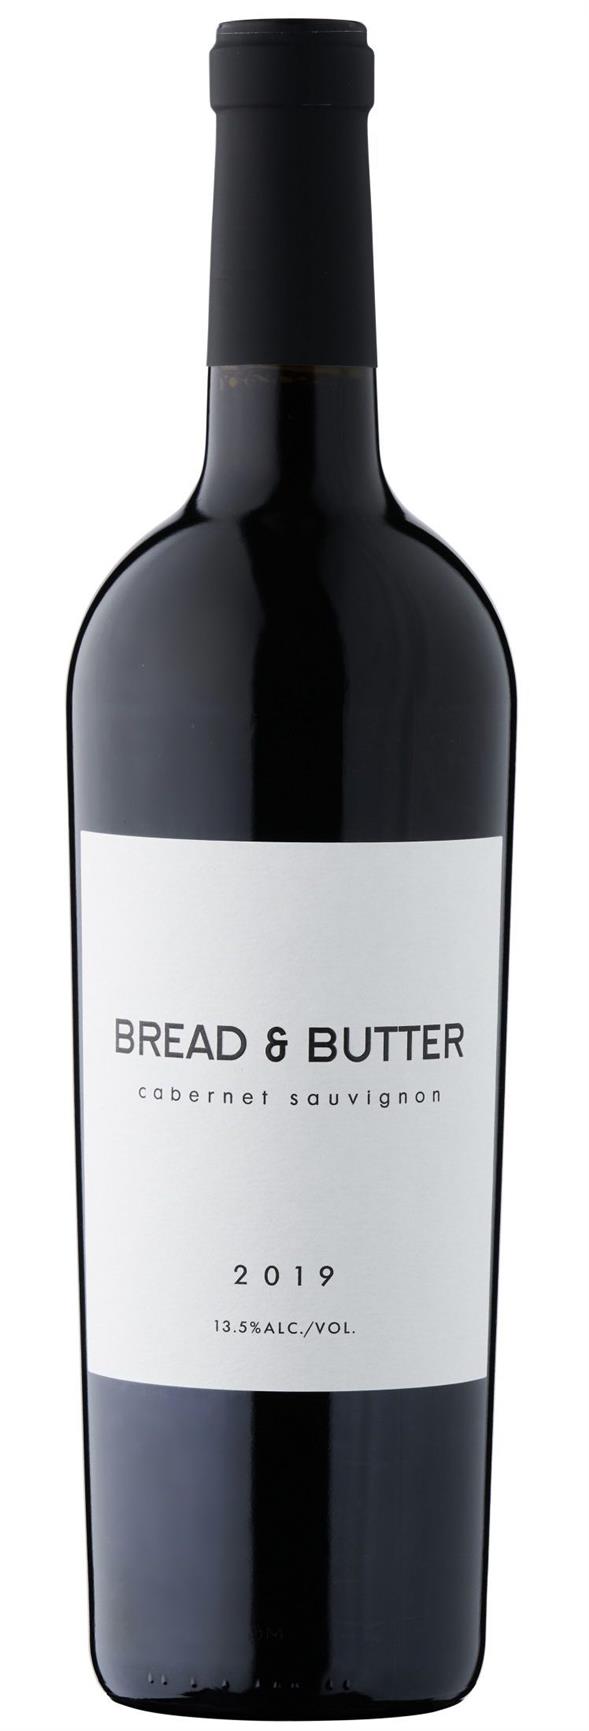 Bread & Butter – Cabernet Sauvignon 2019